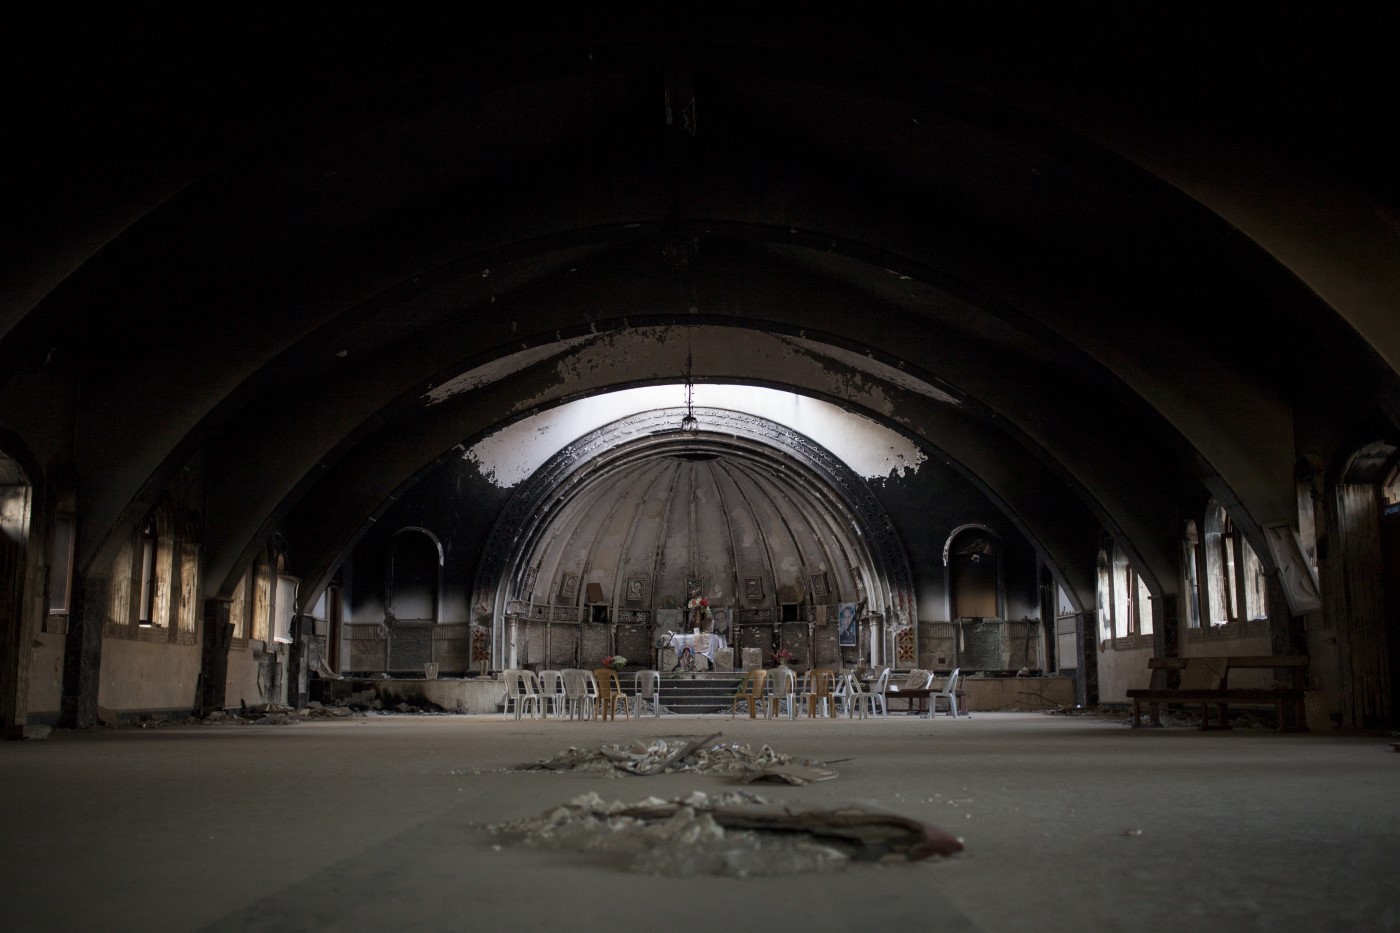 Interior del monasterio "Mar-bhnam and Sara", situado a 33 km de Mosul, quemado y destruido por el EI. Algunos creyentes volvían a recuperar el espacio después de su liberación. Qaraqosh - Hamdania - Mosul, Irak. 31 de julio de 2017